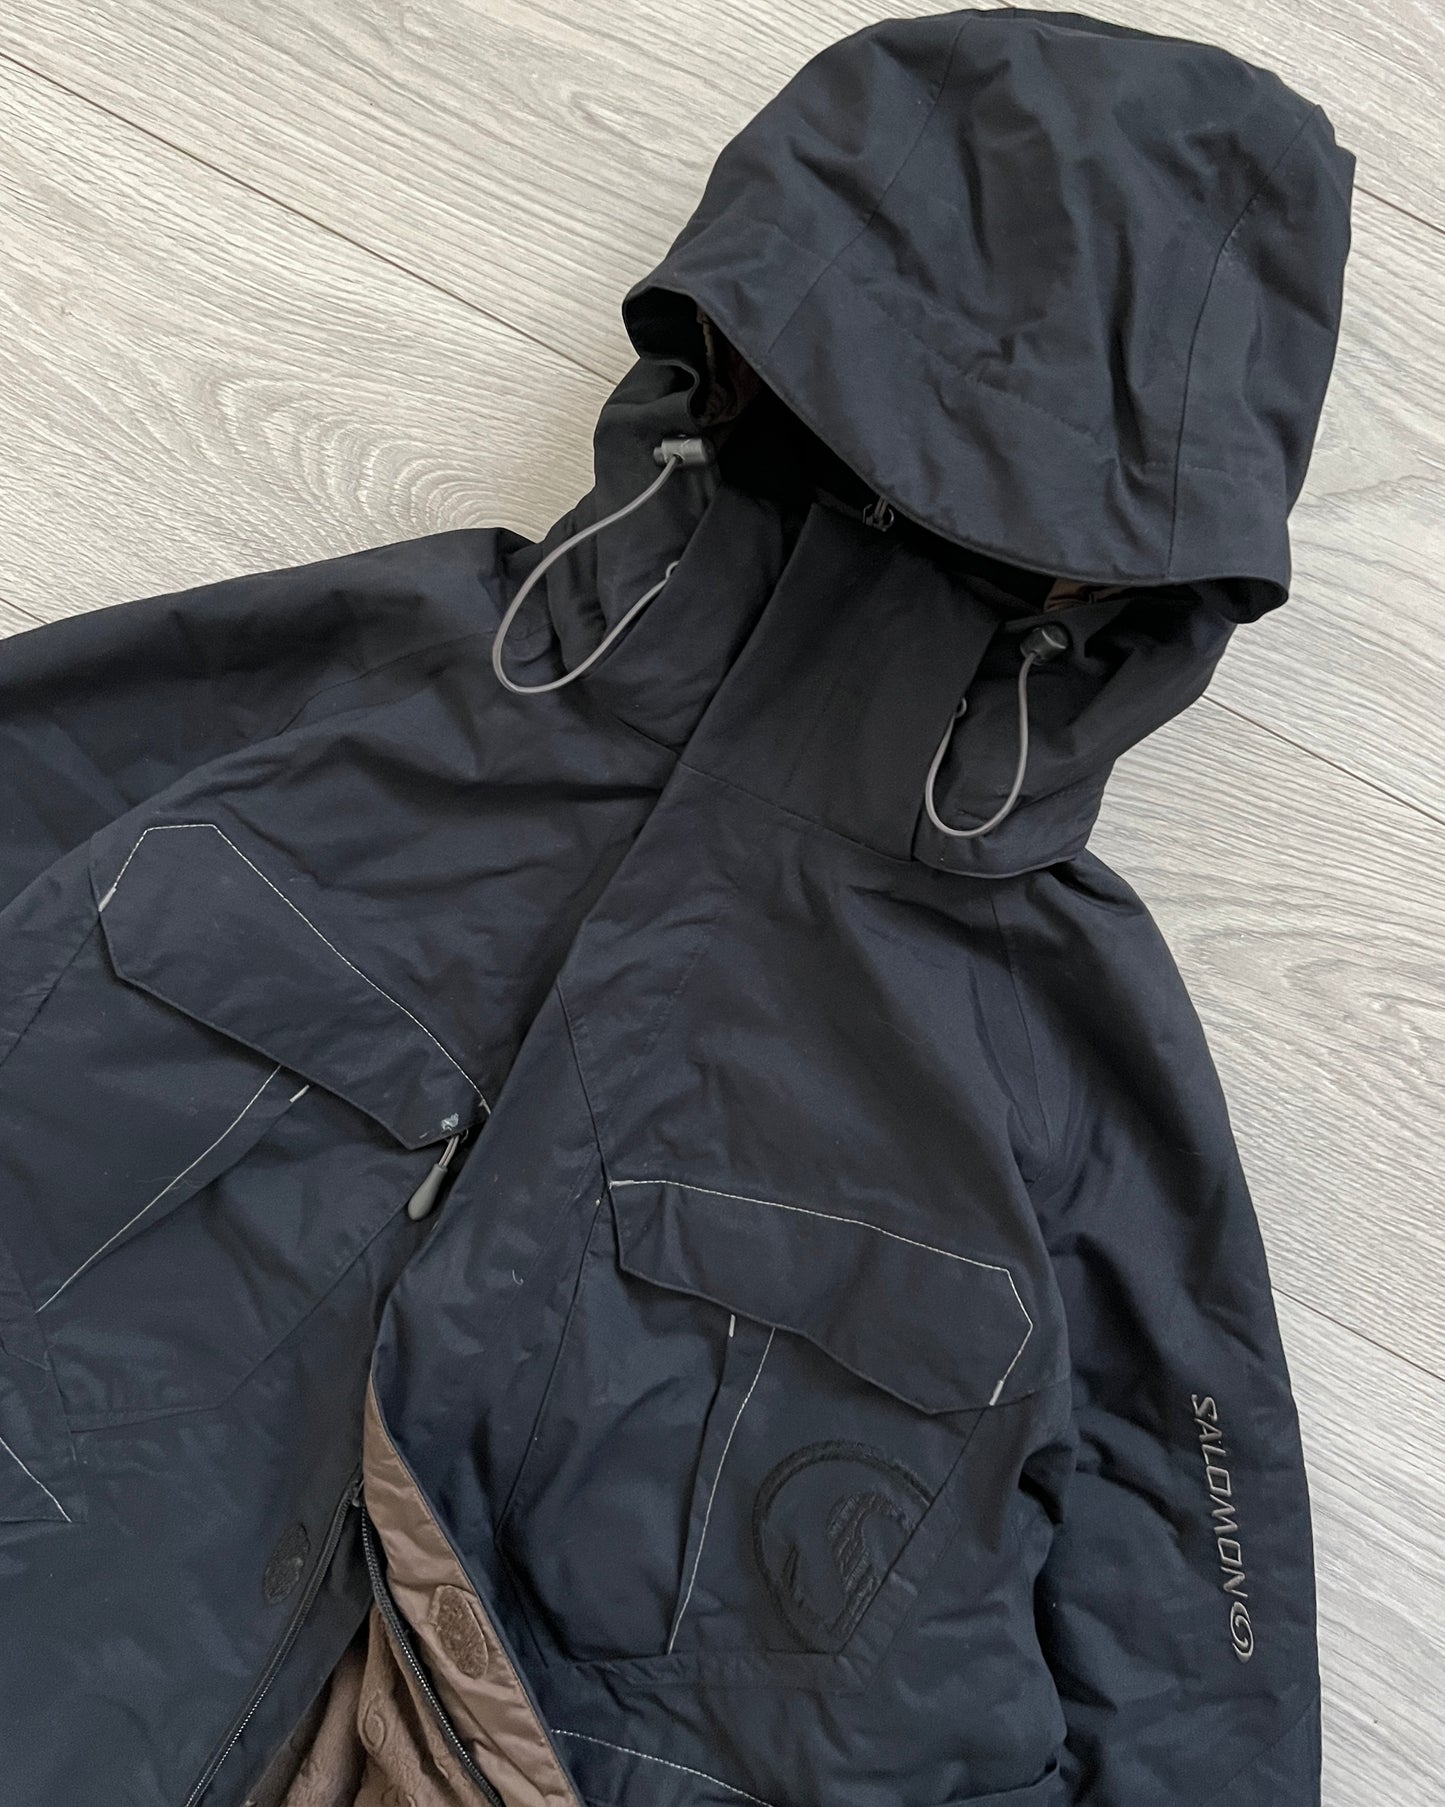 Salomon 00s Fleece Lined Panelled Technical Vent Jacket - Size L